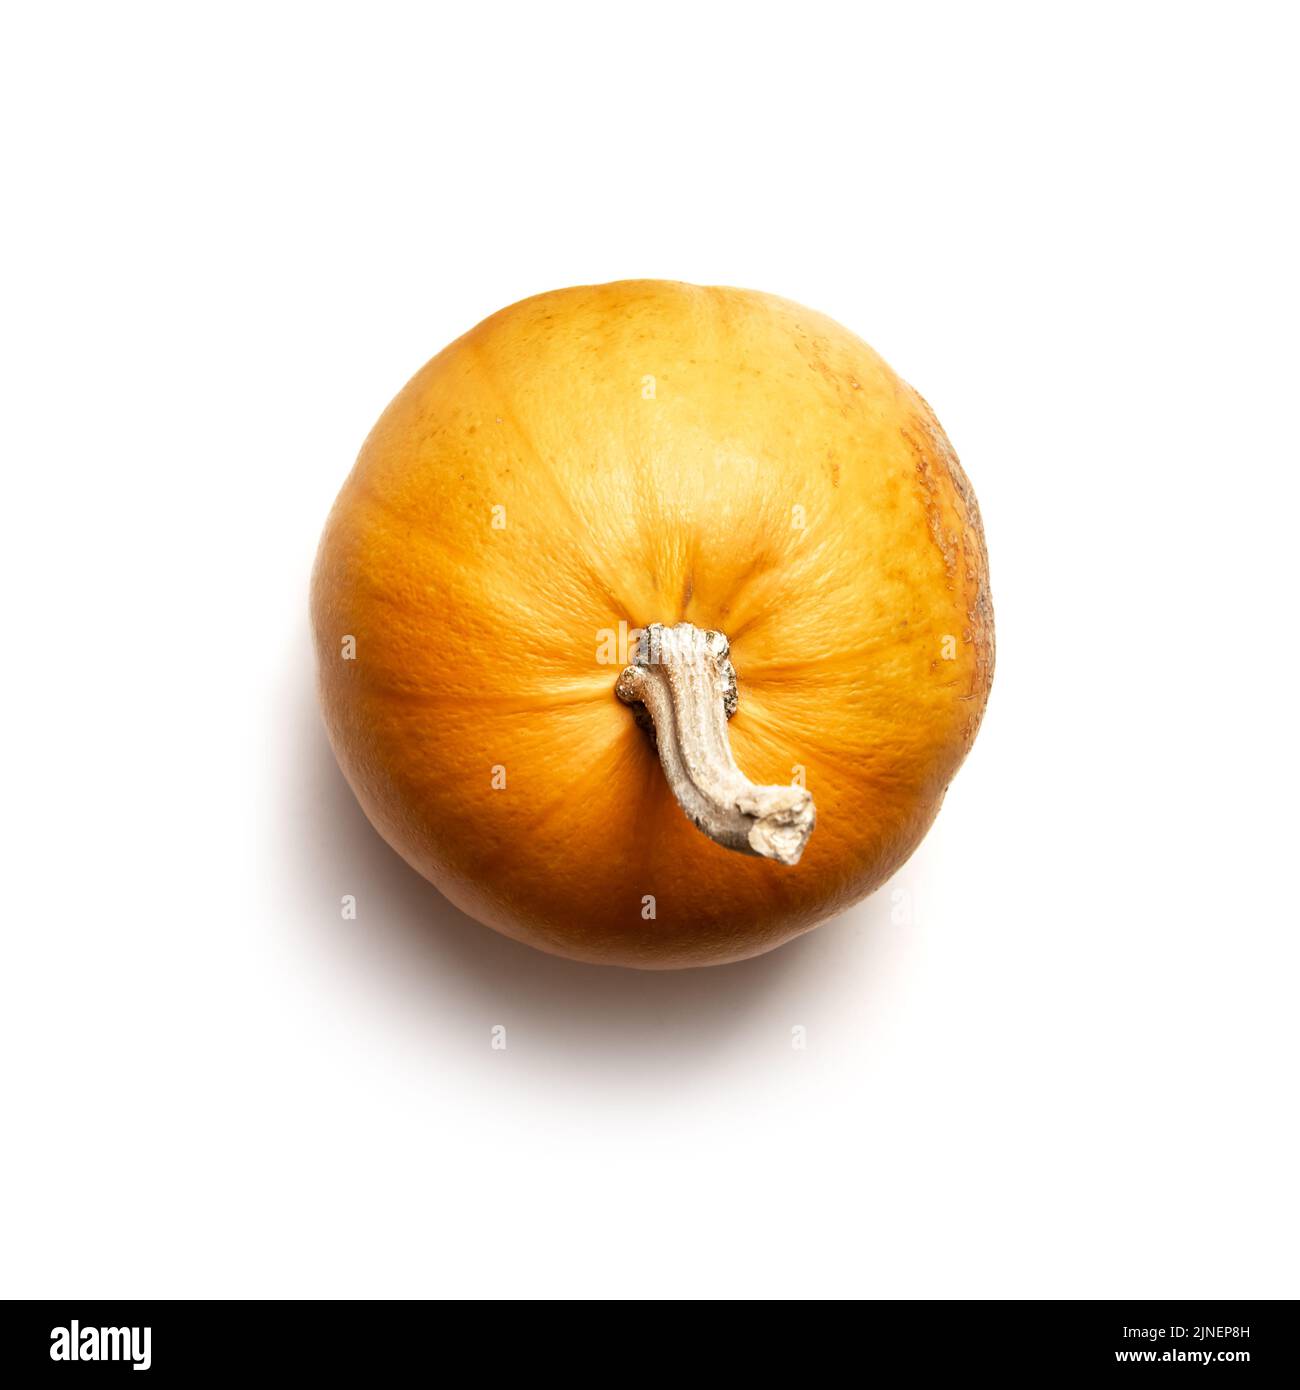 Calabaza naranja aislada sobre fondo blanco. Fotografía de alimentos. Concepto de Halloween. Vista superior. Forma parte del conjunto de diferentes tipos de calabazas. Foto de stock